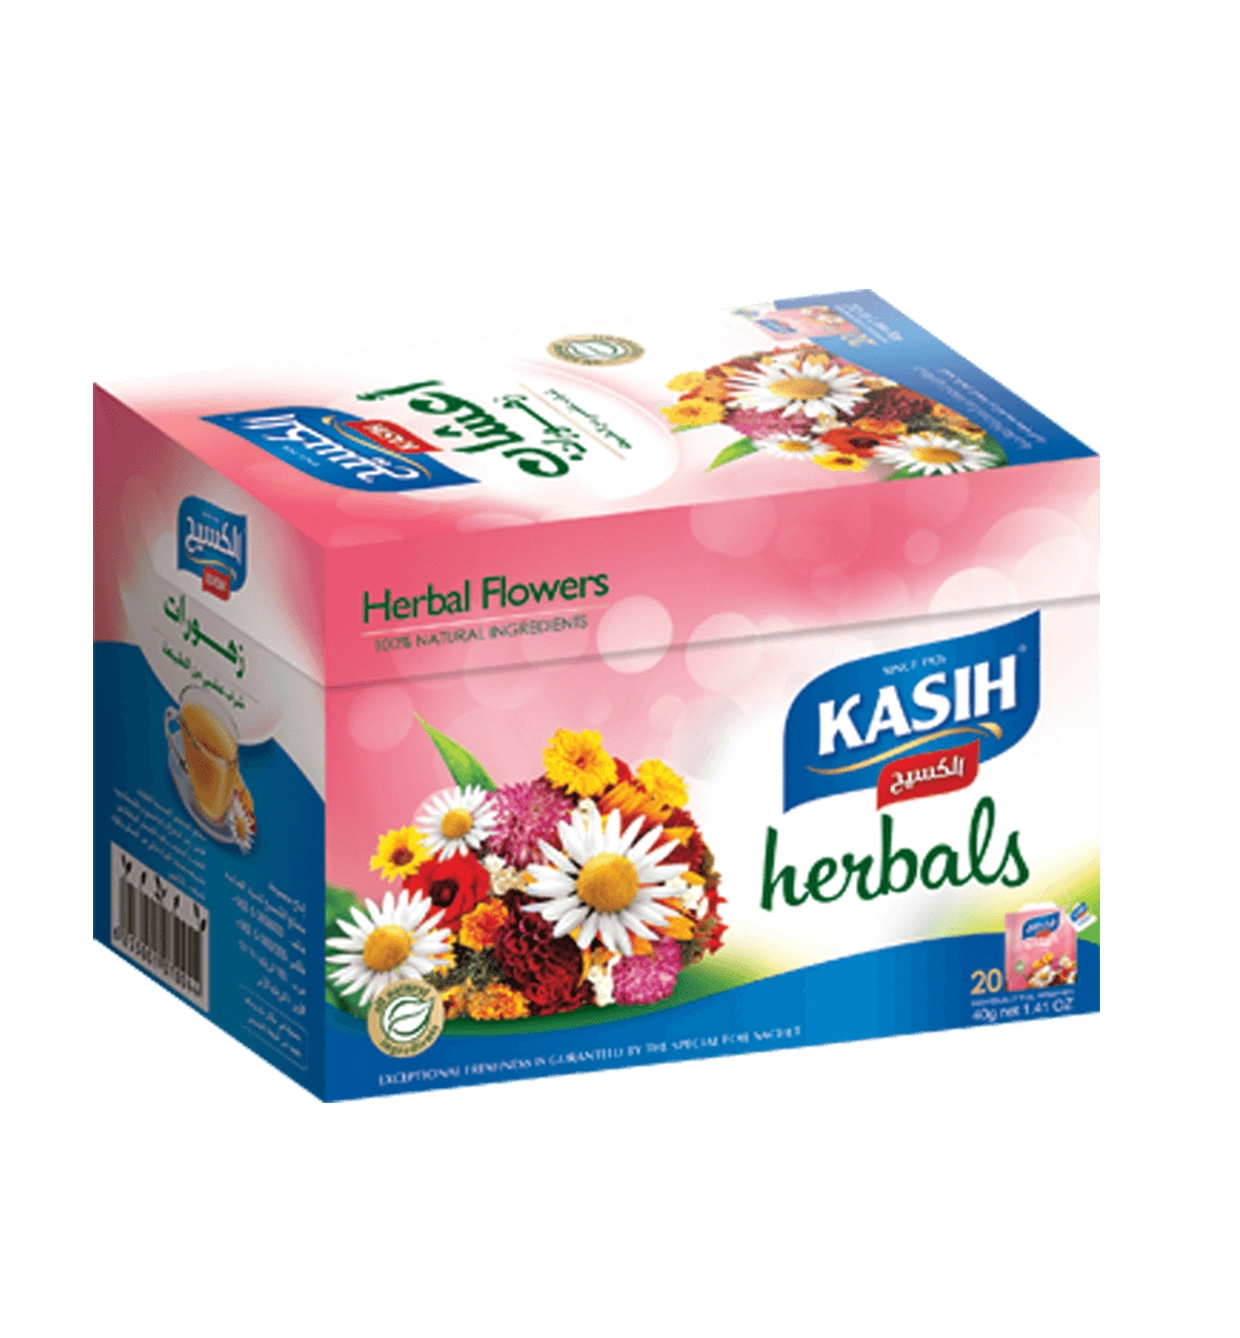 kasih_herbals_flower